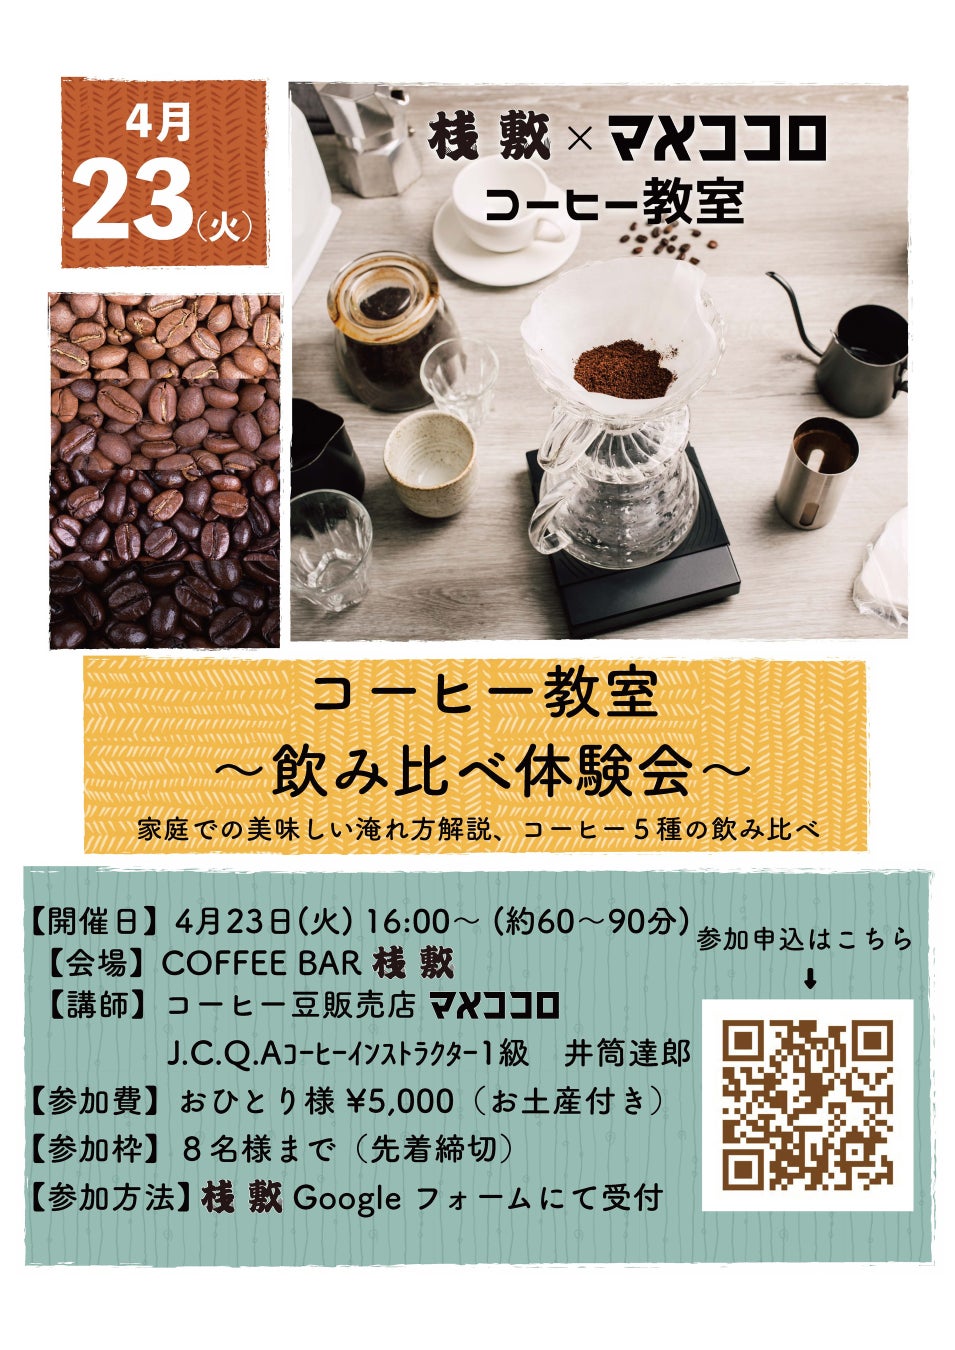 COFFEE BAR 桟敷 オープン1周年記念 コーヒー飲み比べ体験教室開催